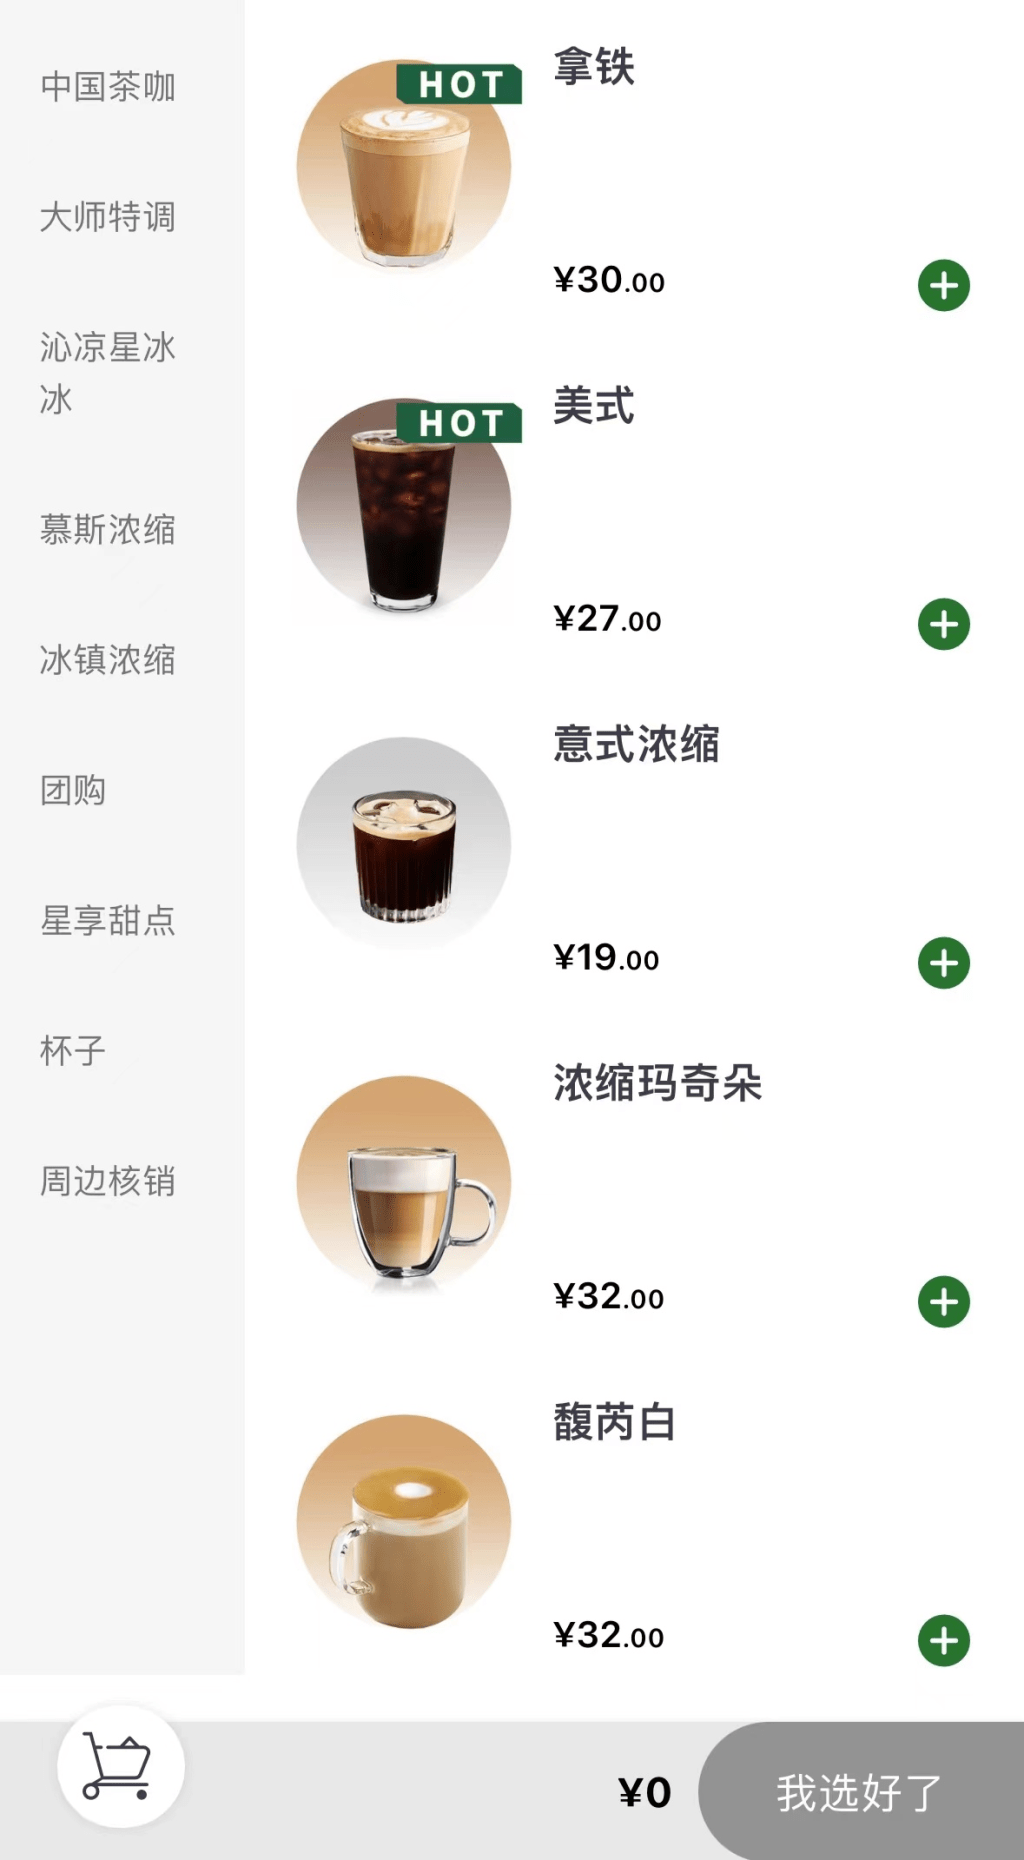 假冒App点单页面。 上海警方